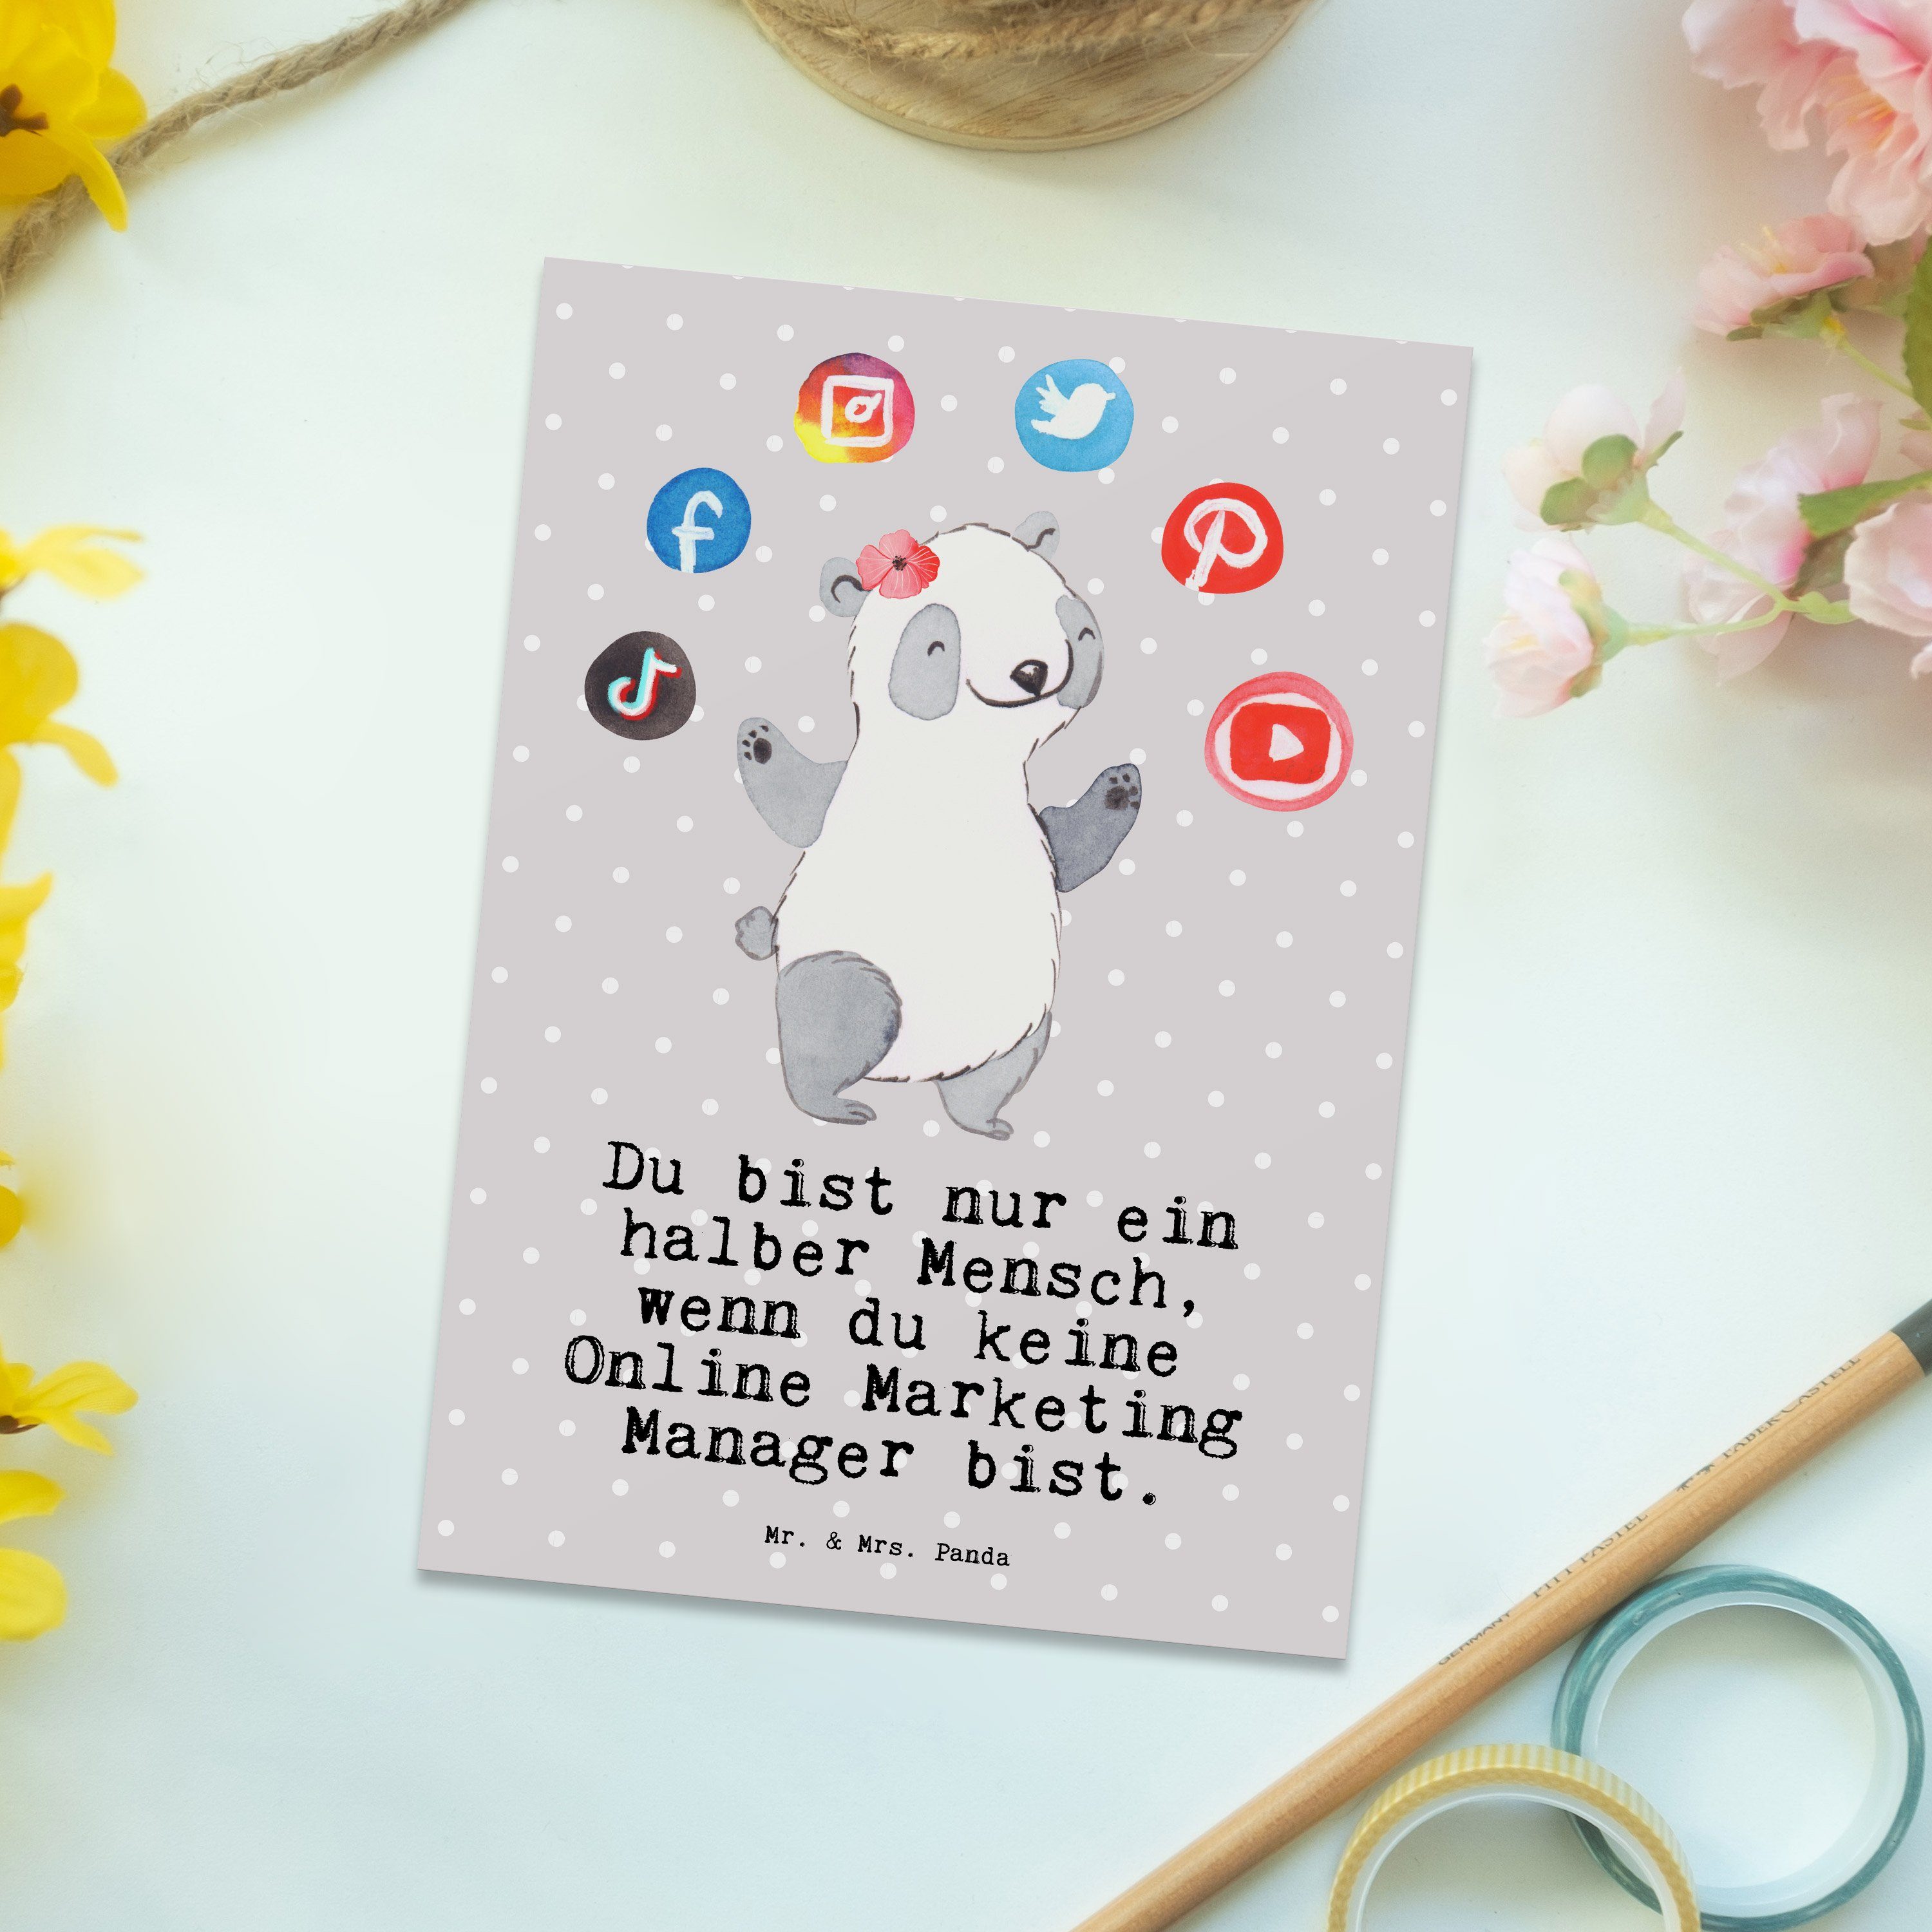 Mr. & Pastell - Mrs. Online Grau Manager mit - Marketing Panda Postkarte Geburtst Herz Geschenk